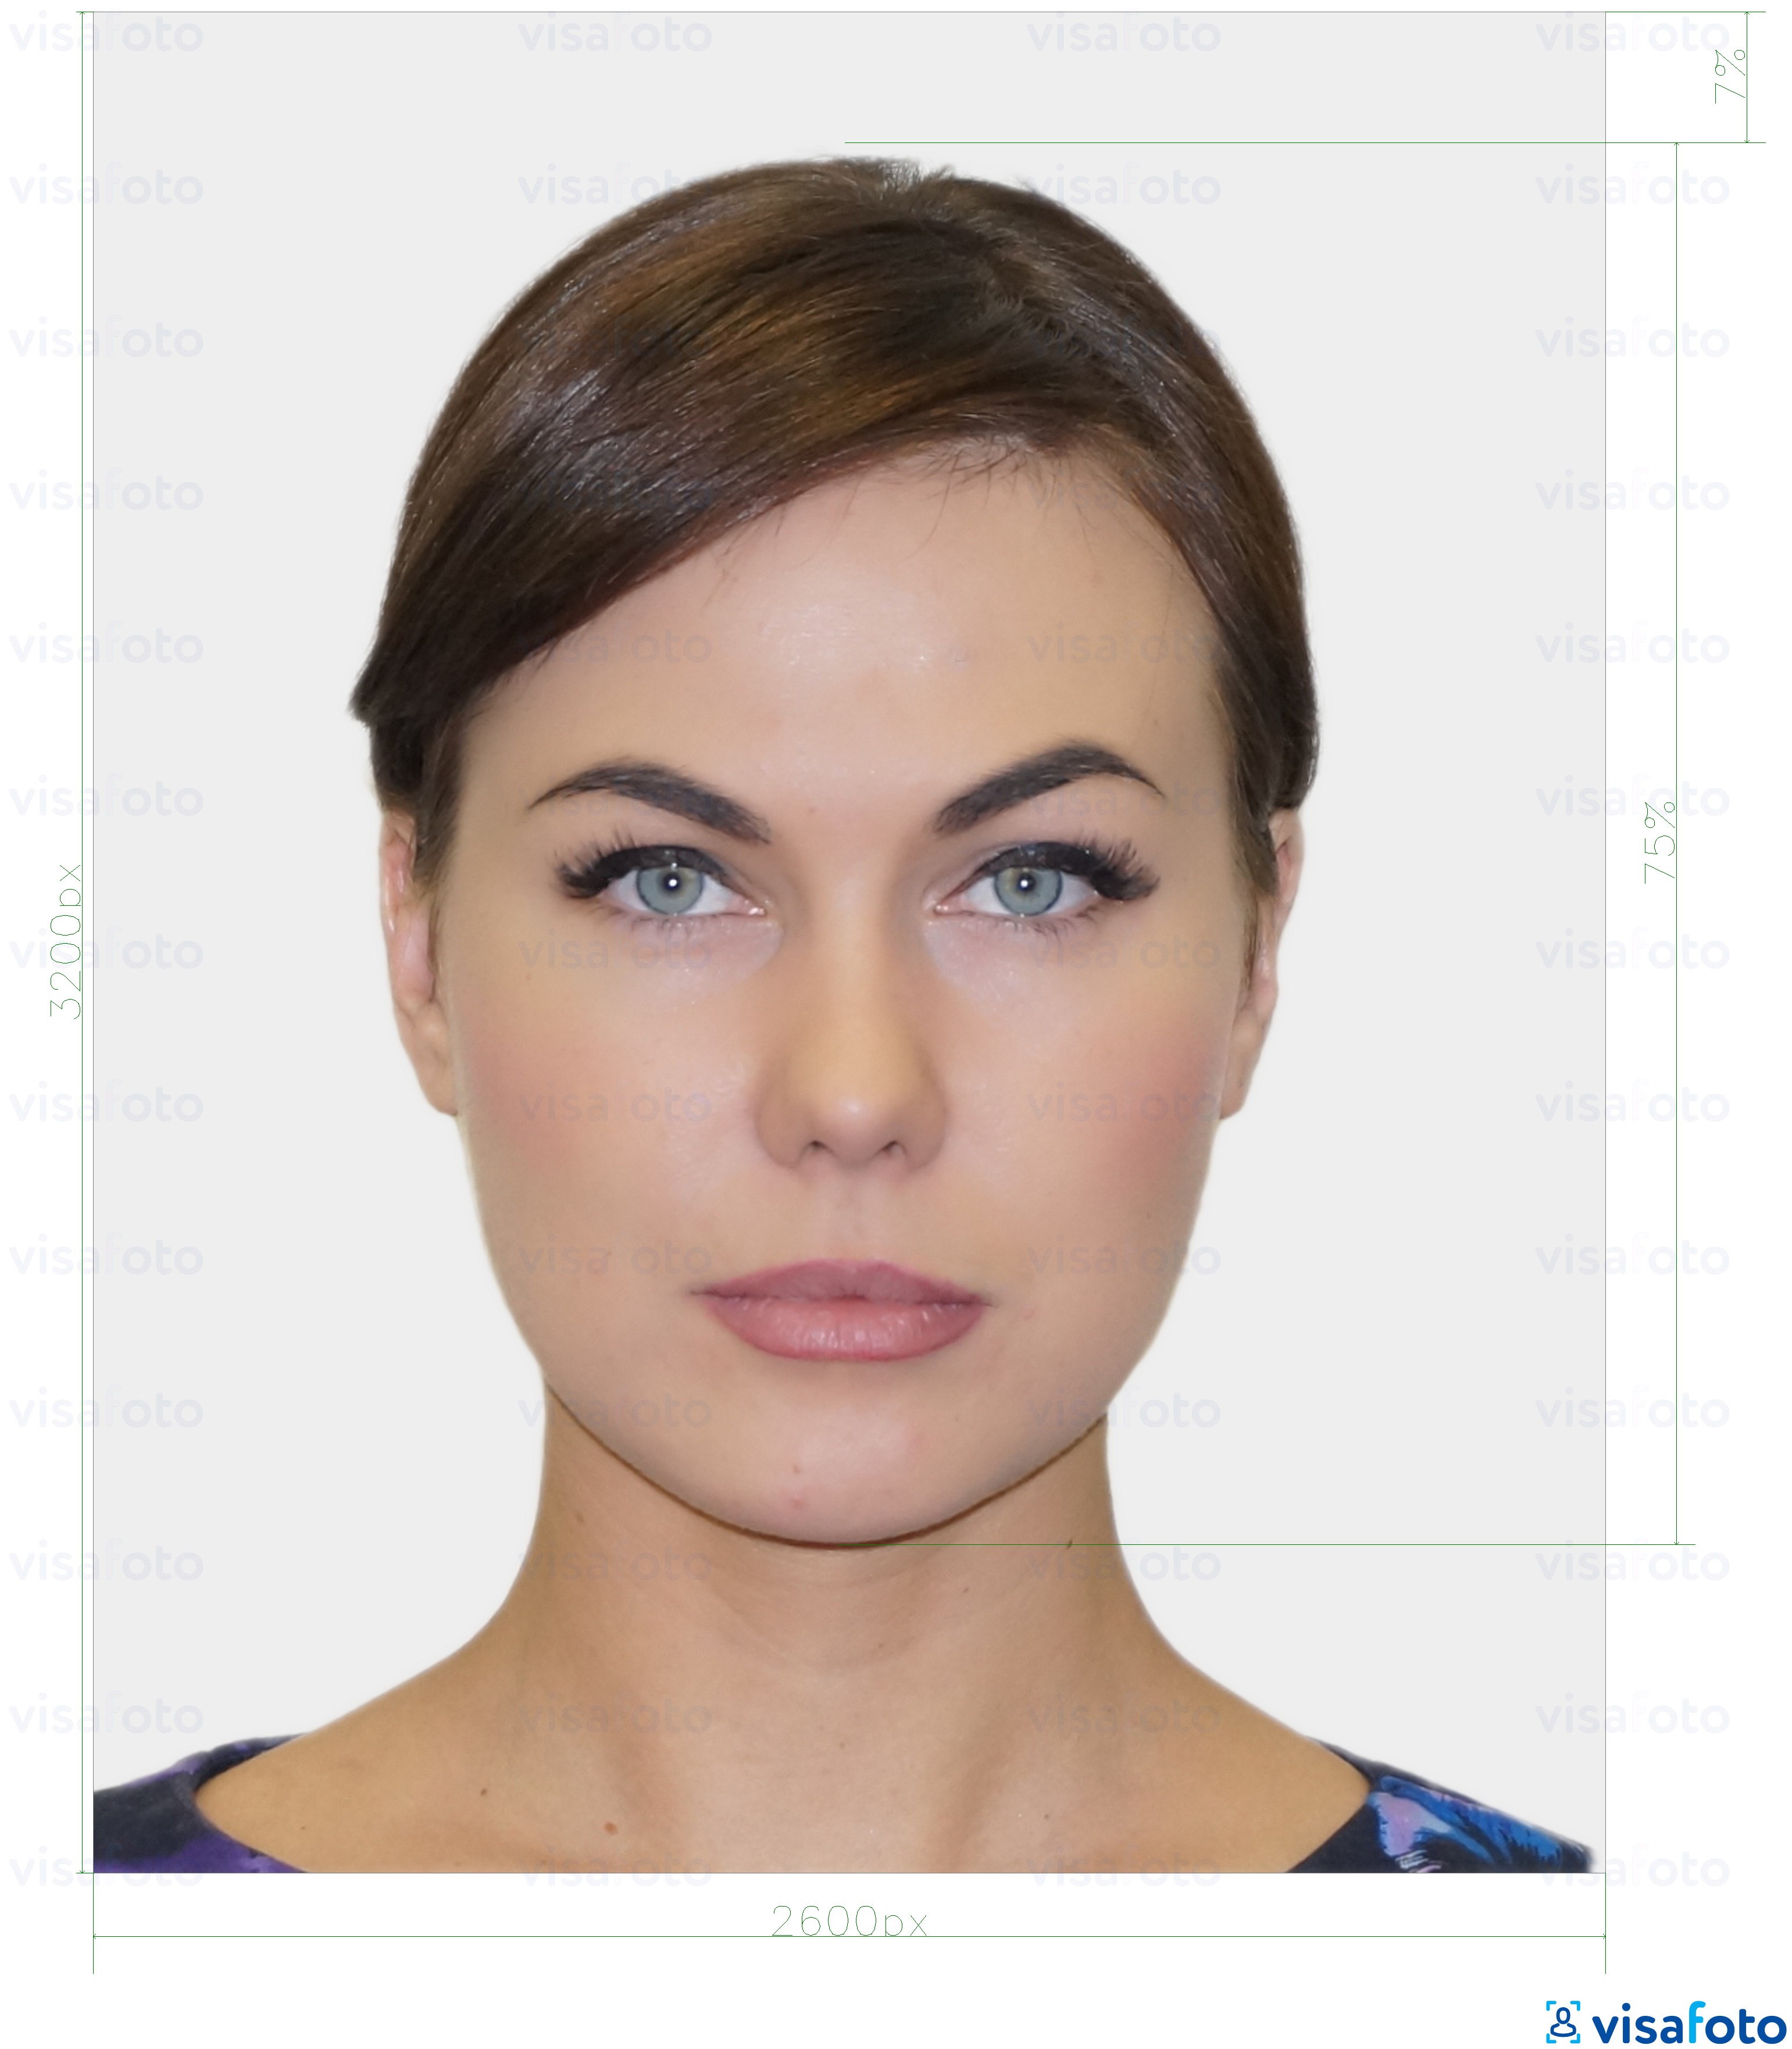 Exemple de foto per a Targeta d'identitat digital resident a Estònia 1300x1600 píxels amb la mida exacta especificada